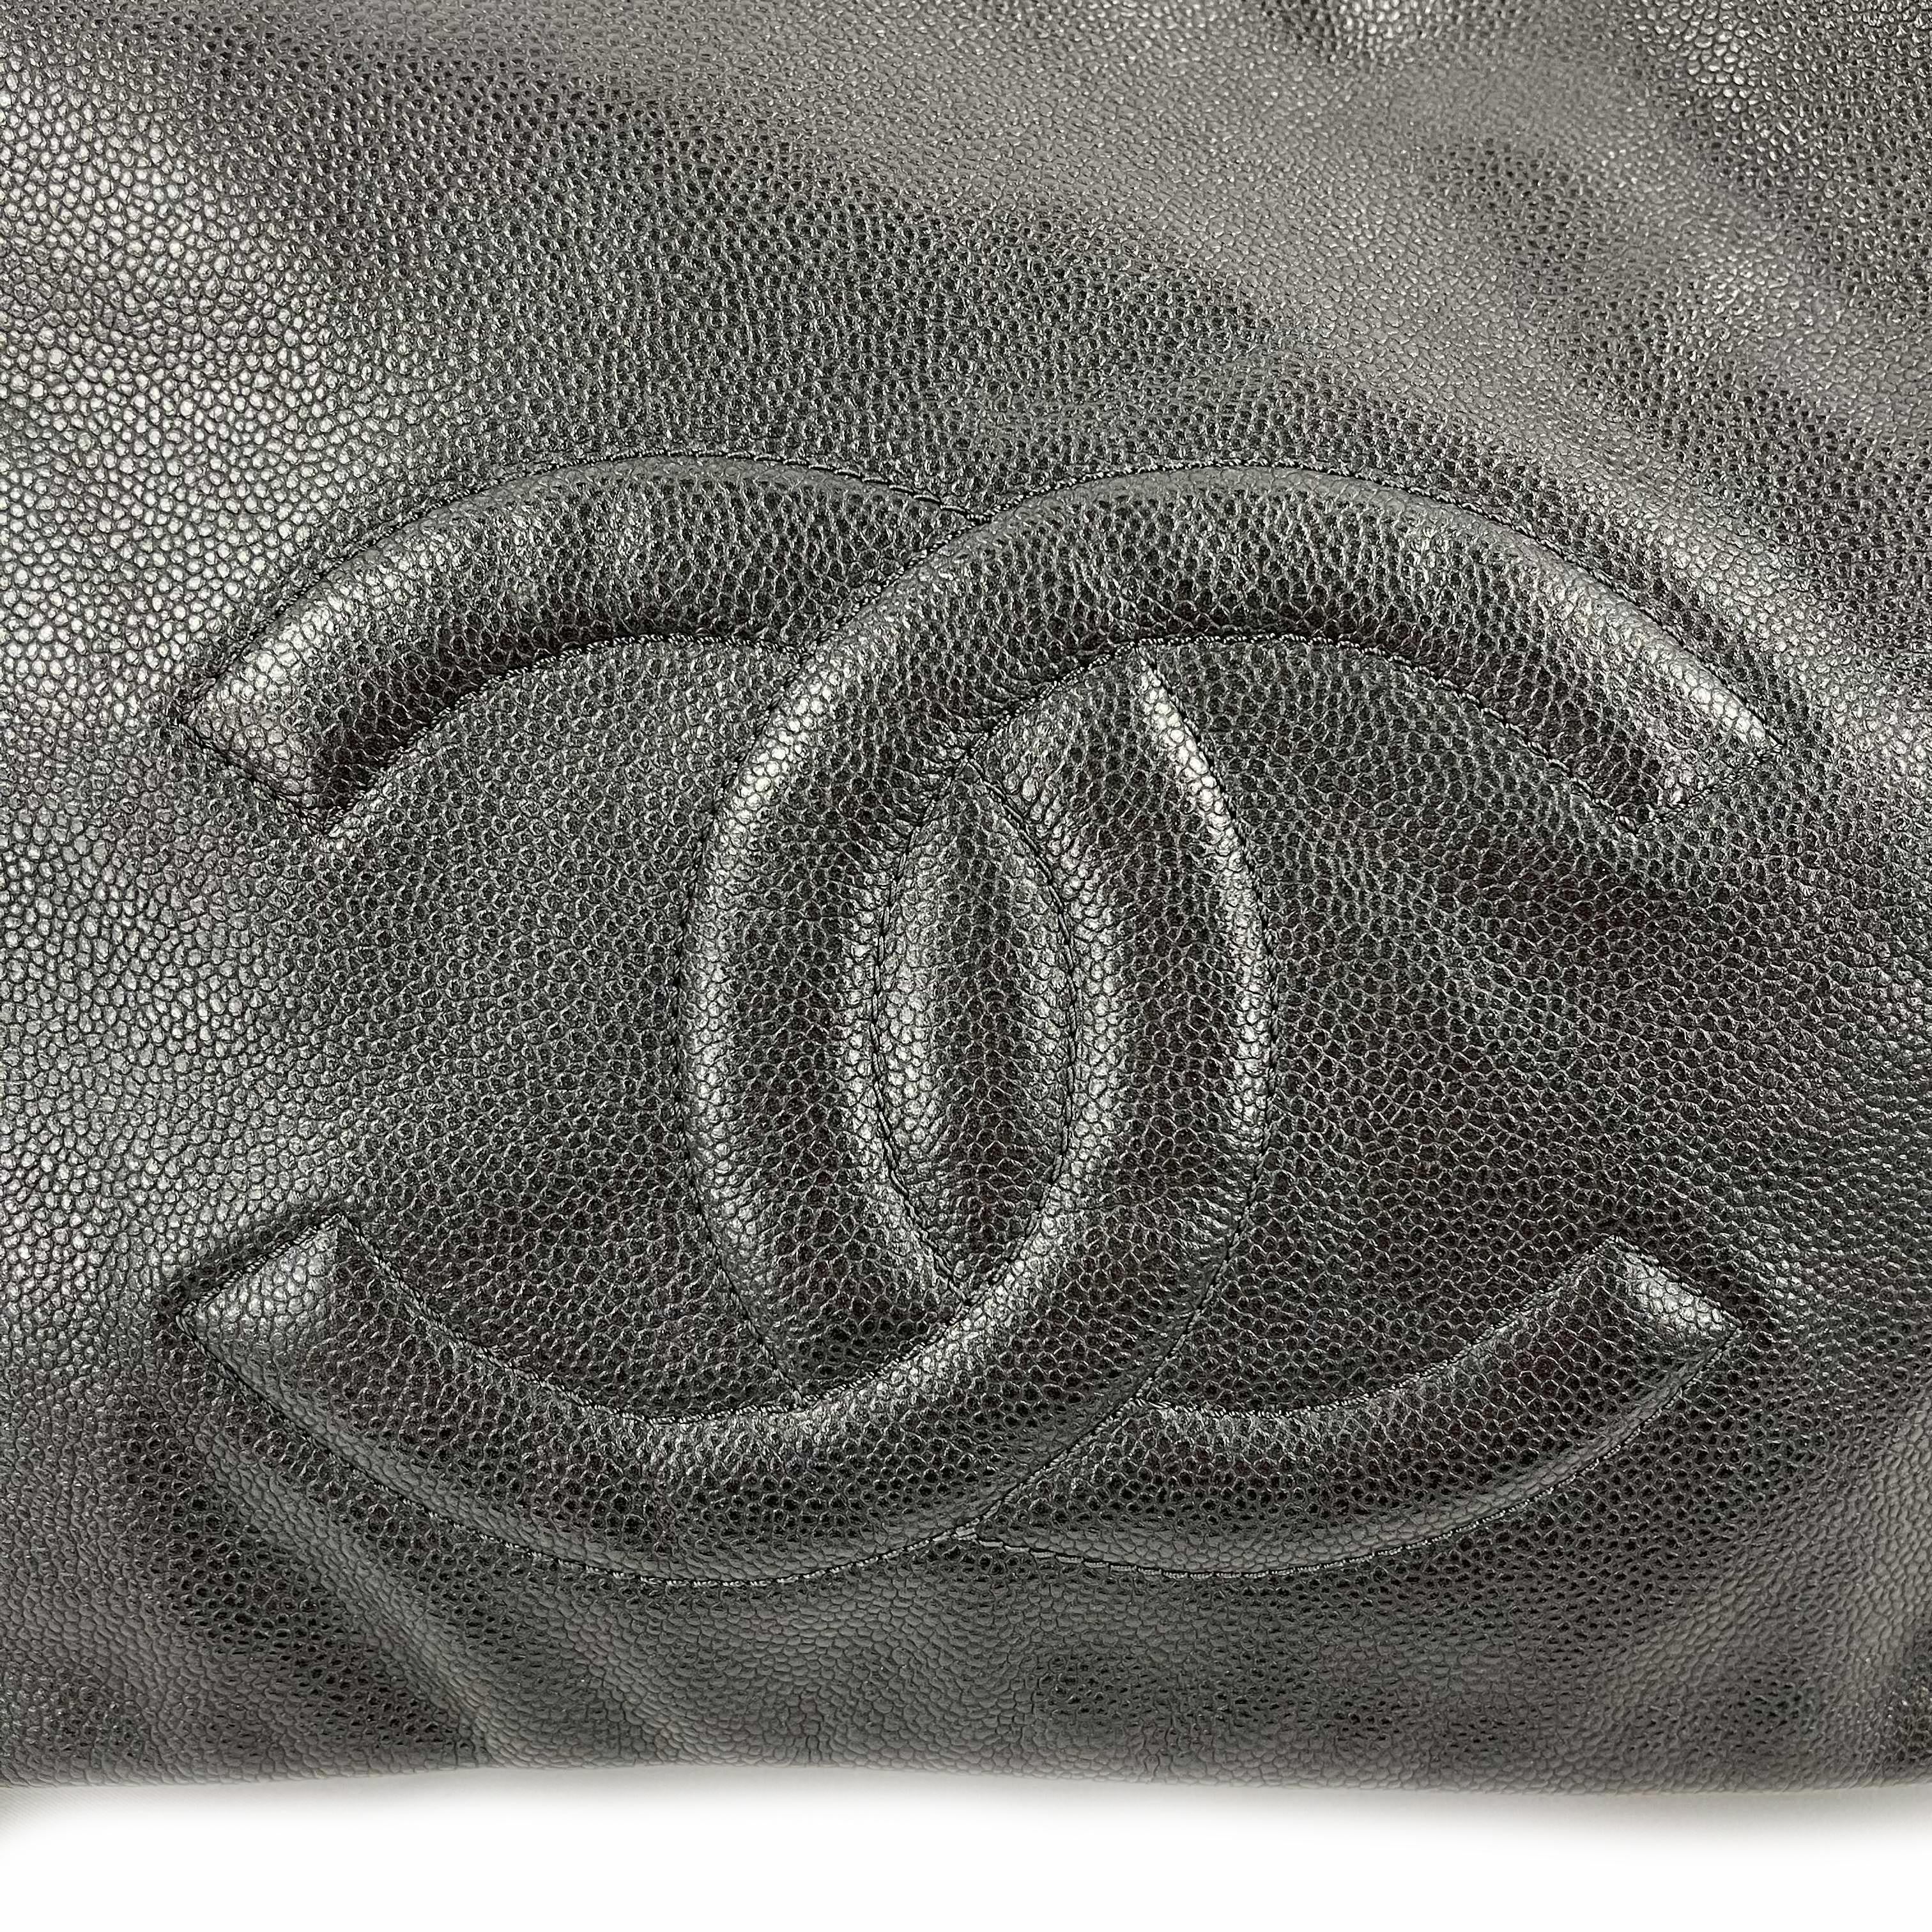 CHANEL Large Black CC Caviar Flap 31 Matte Silver Chain Strap Shoulder Bag 6